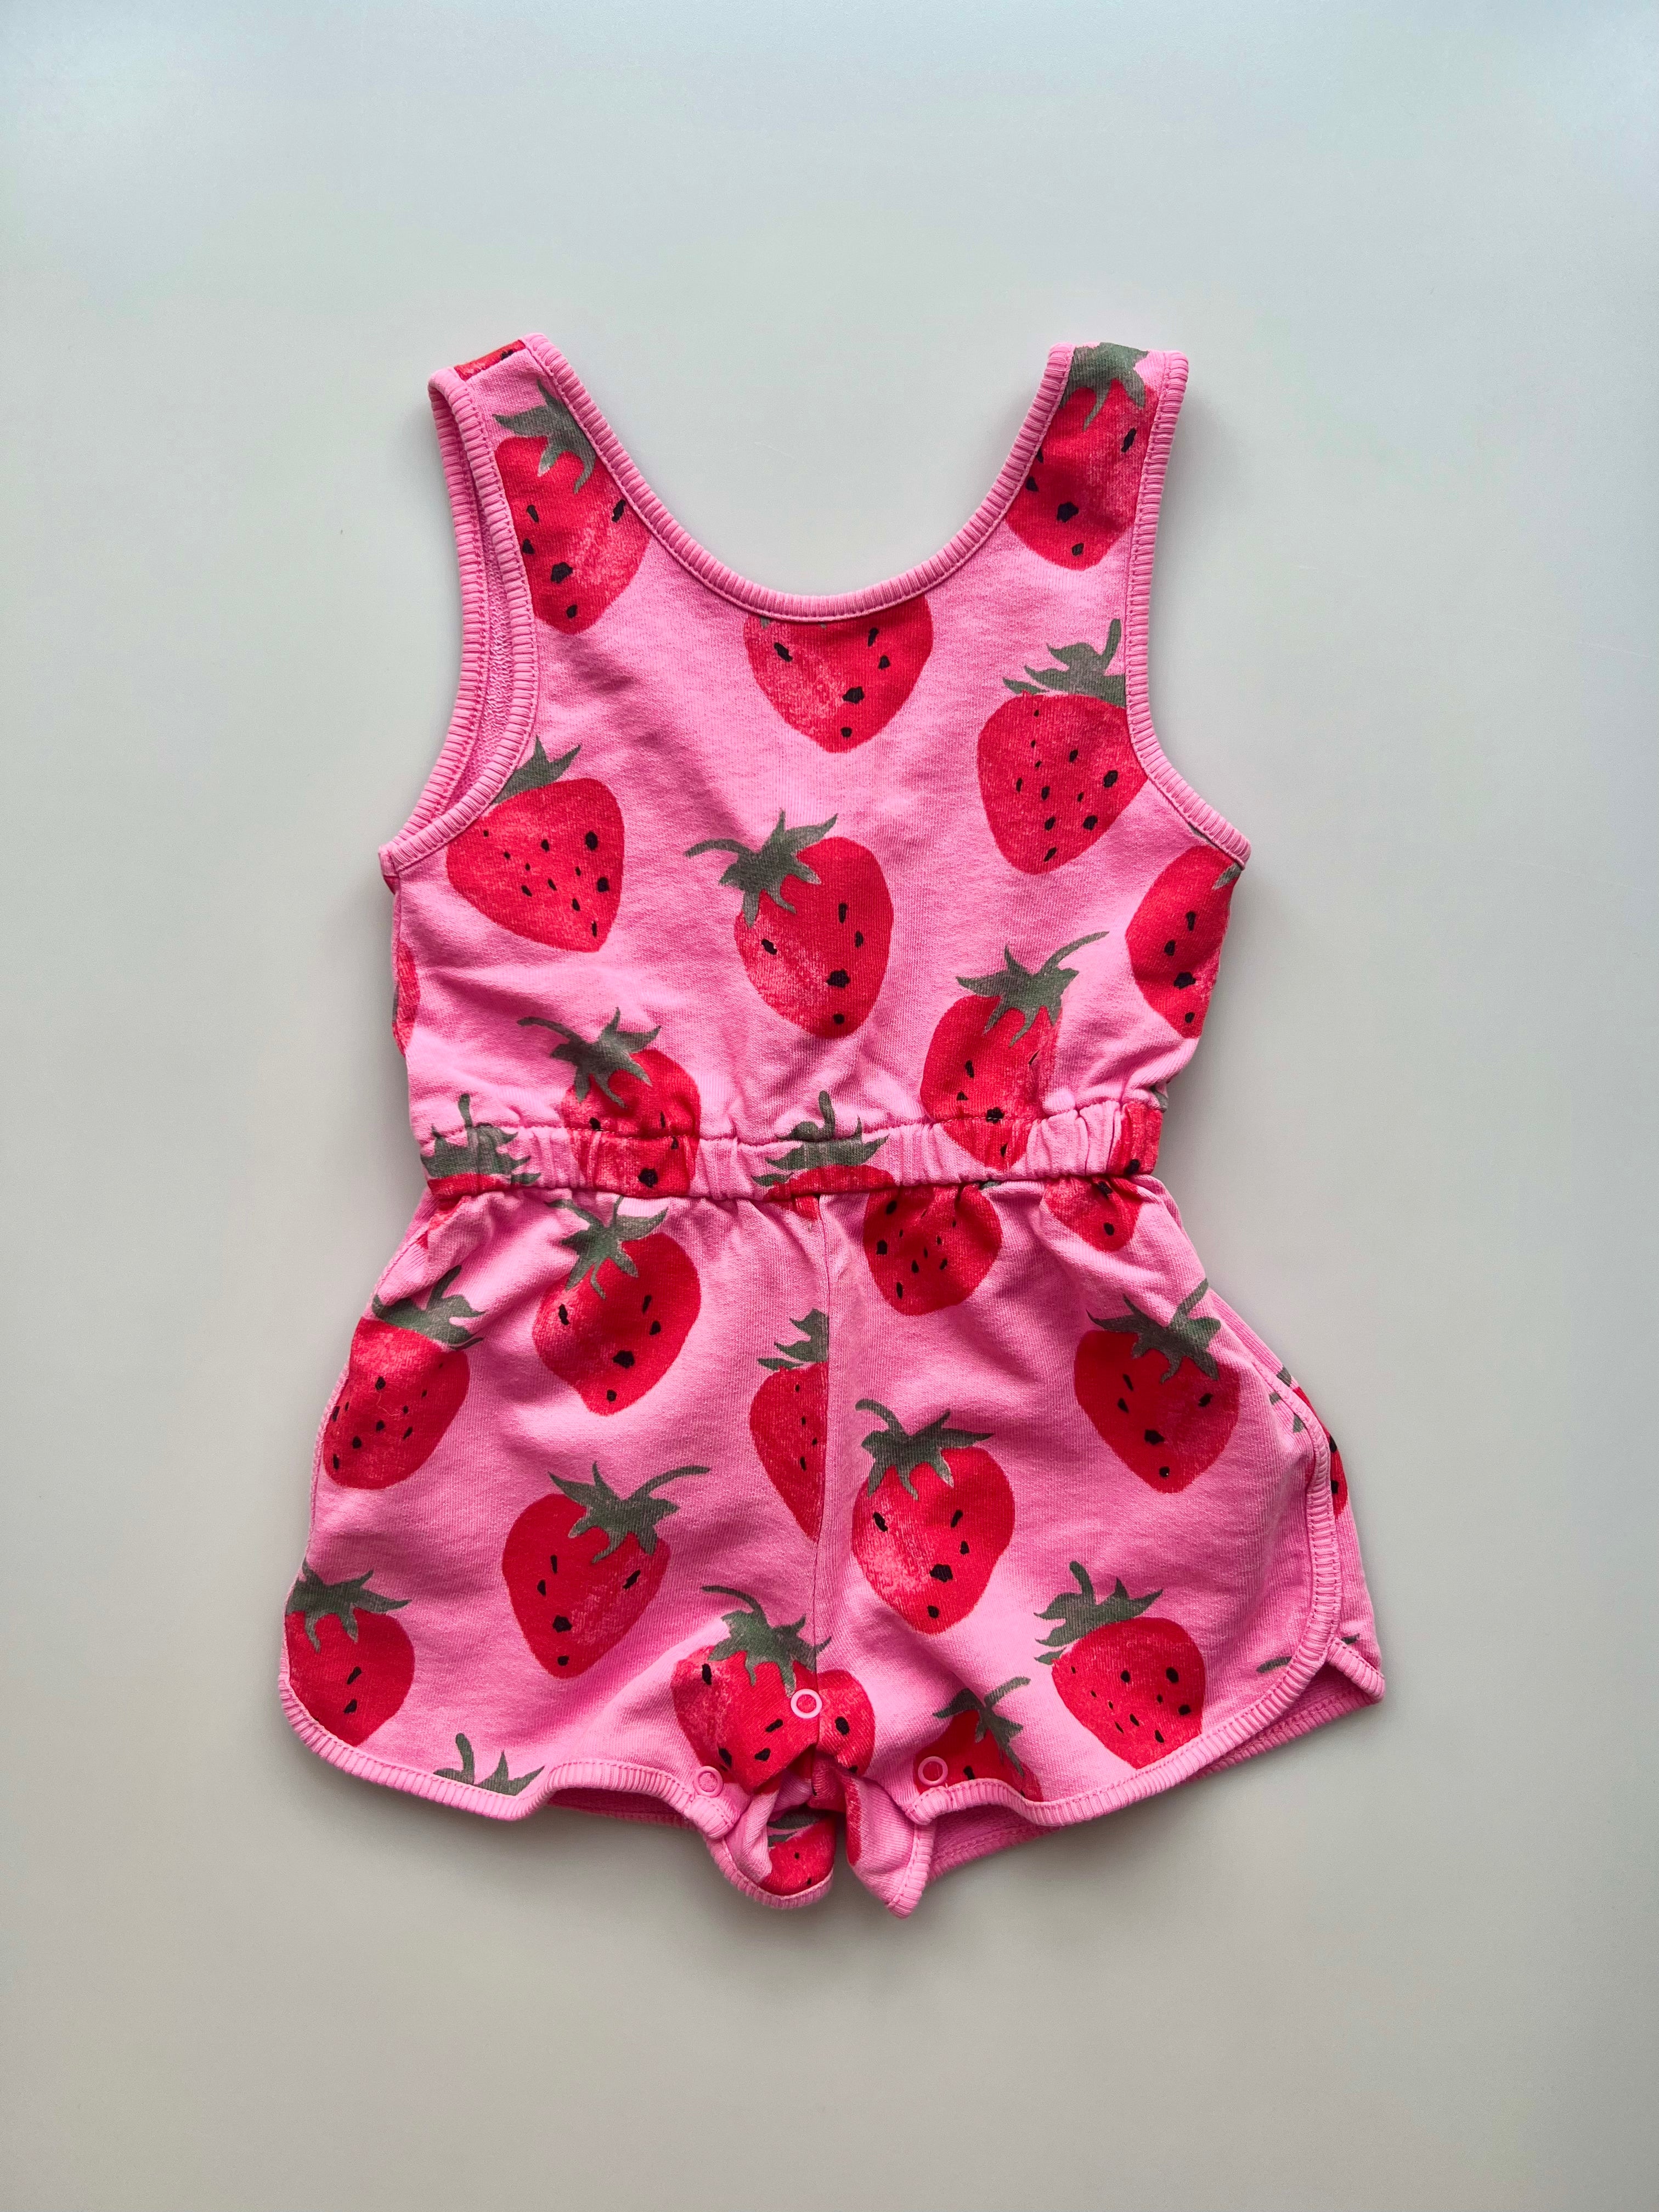 Zara Strawberry Romper 18-24 Months